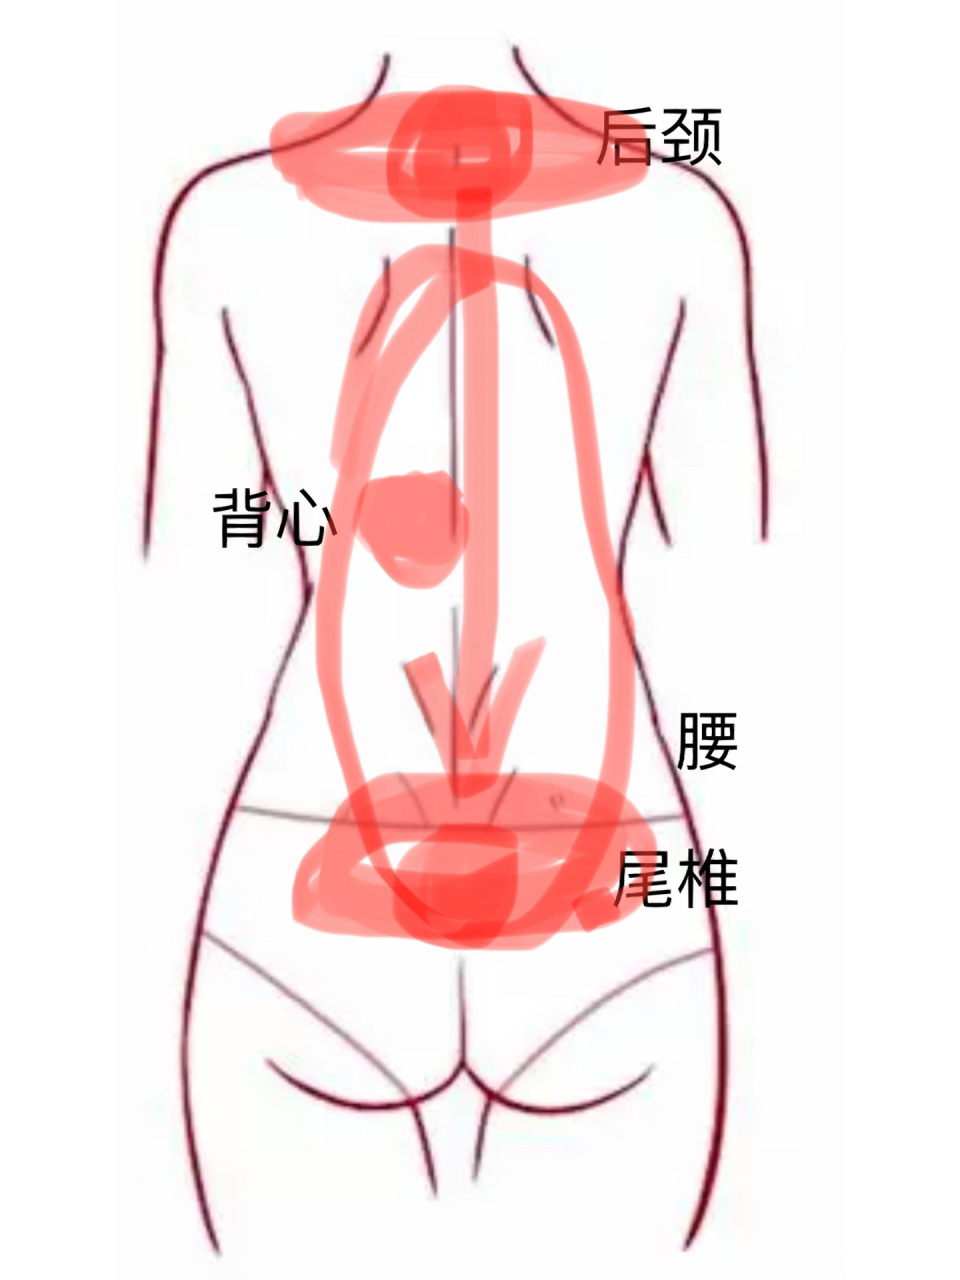 后背疼痛的位置示意图图片